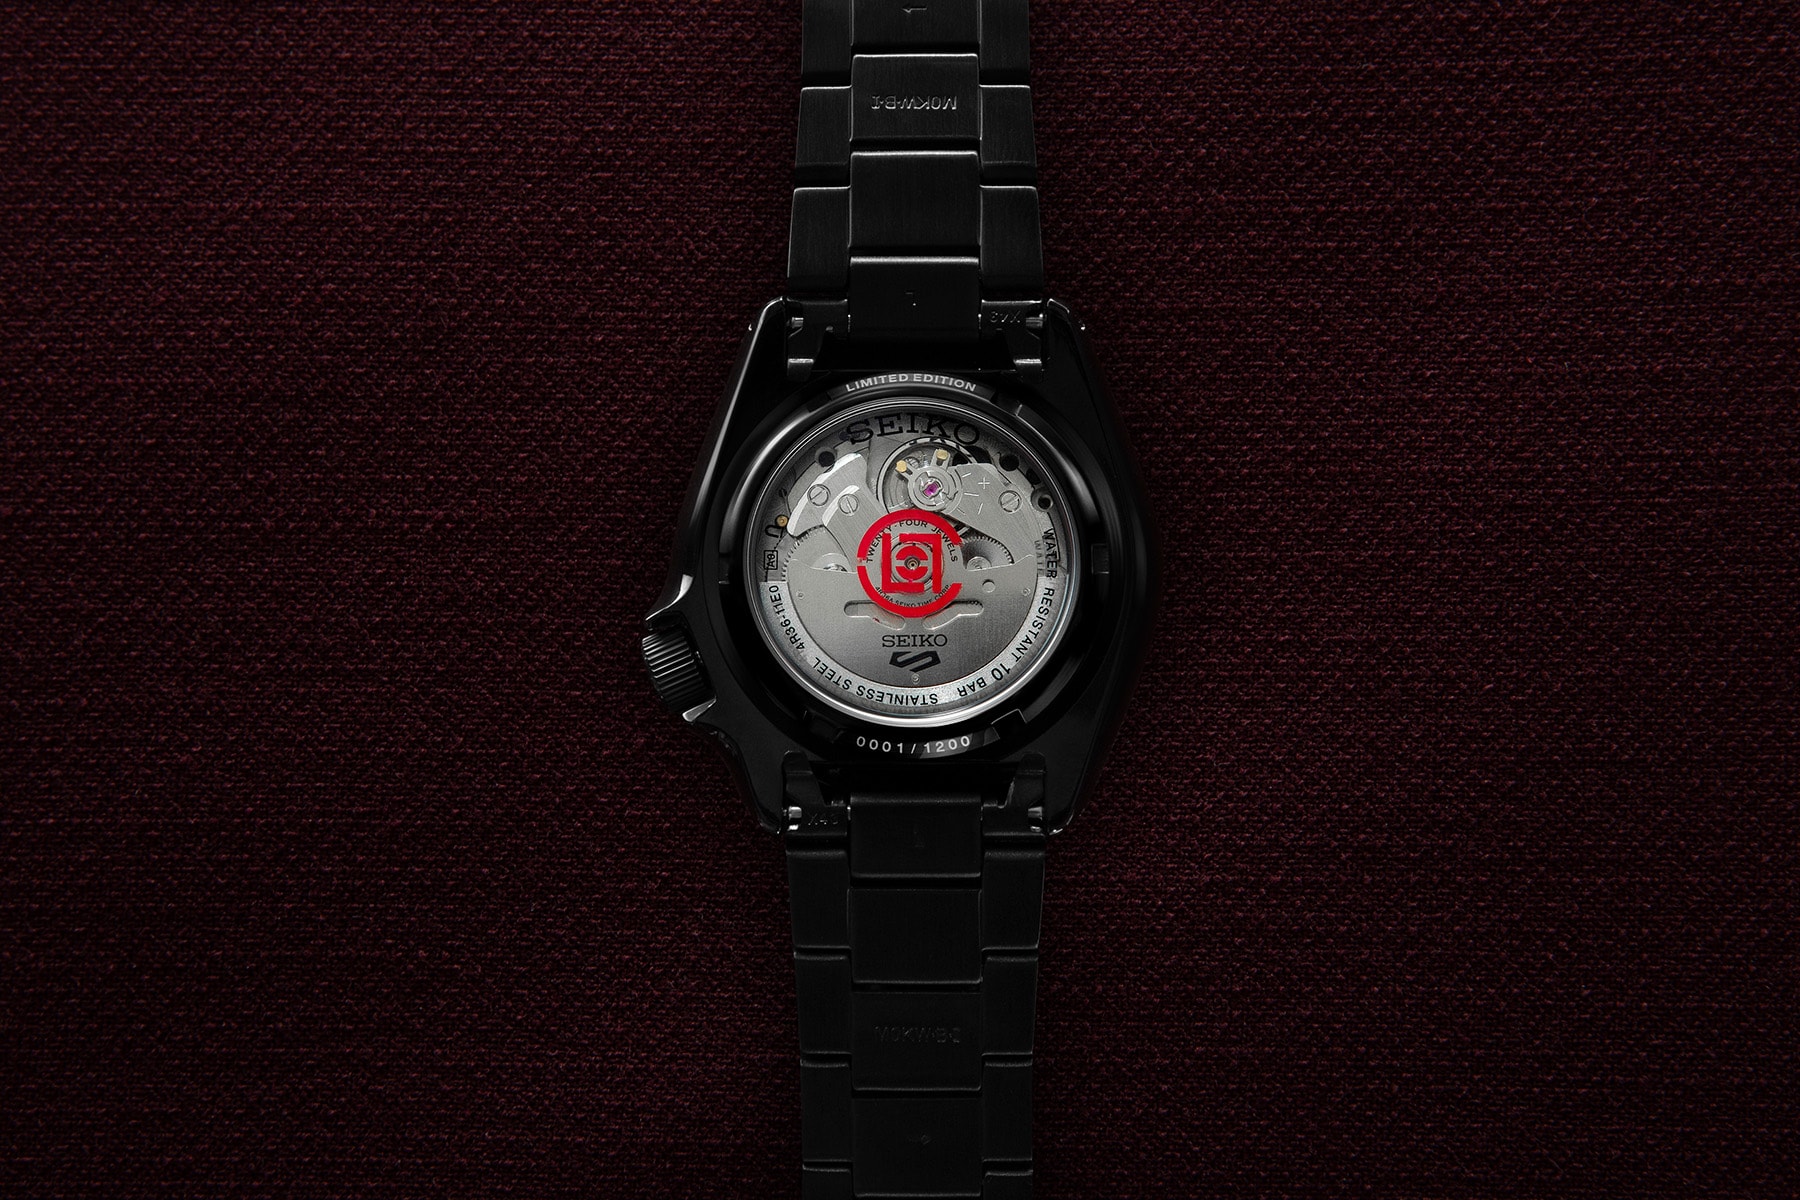 CLOT x Seiko 5 Sports 最新聯名錶款正式登場